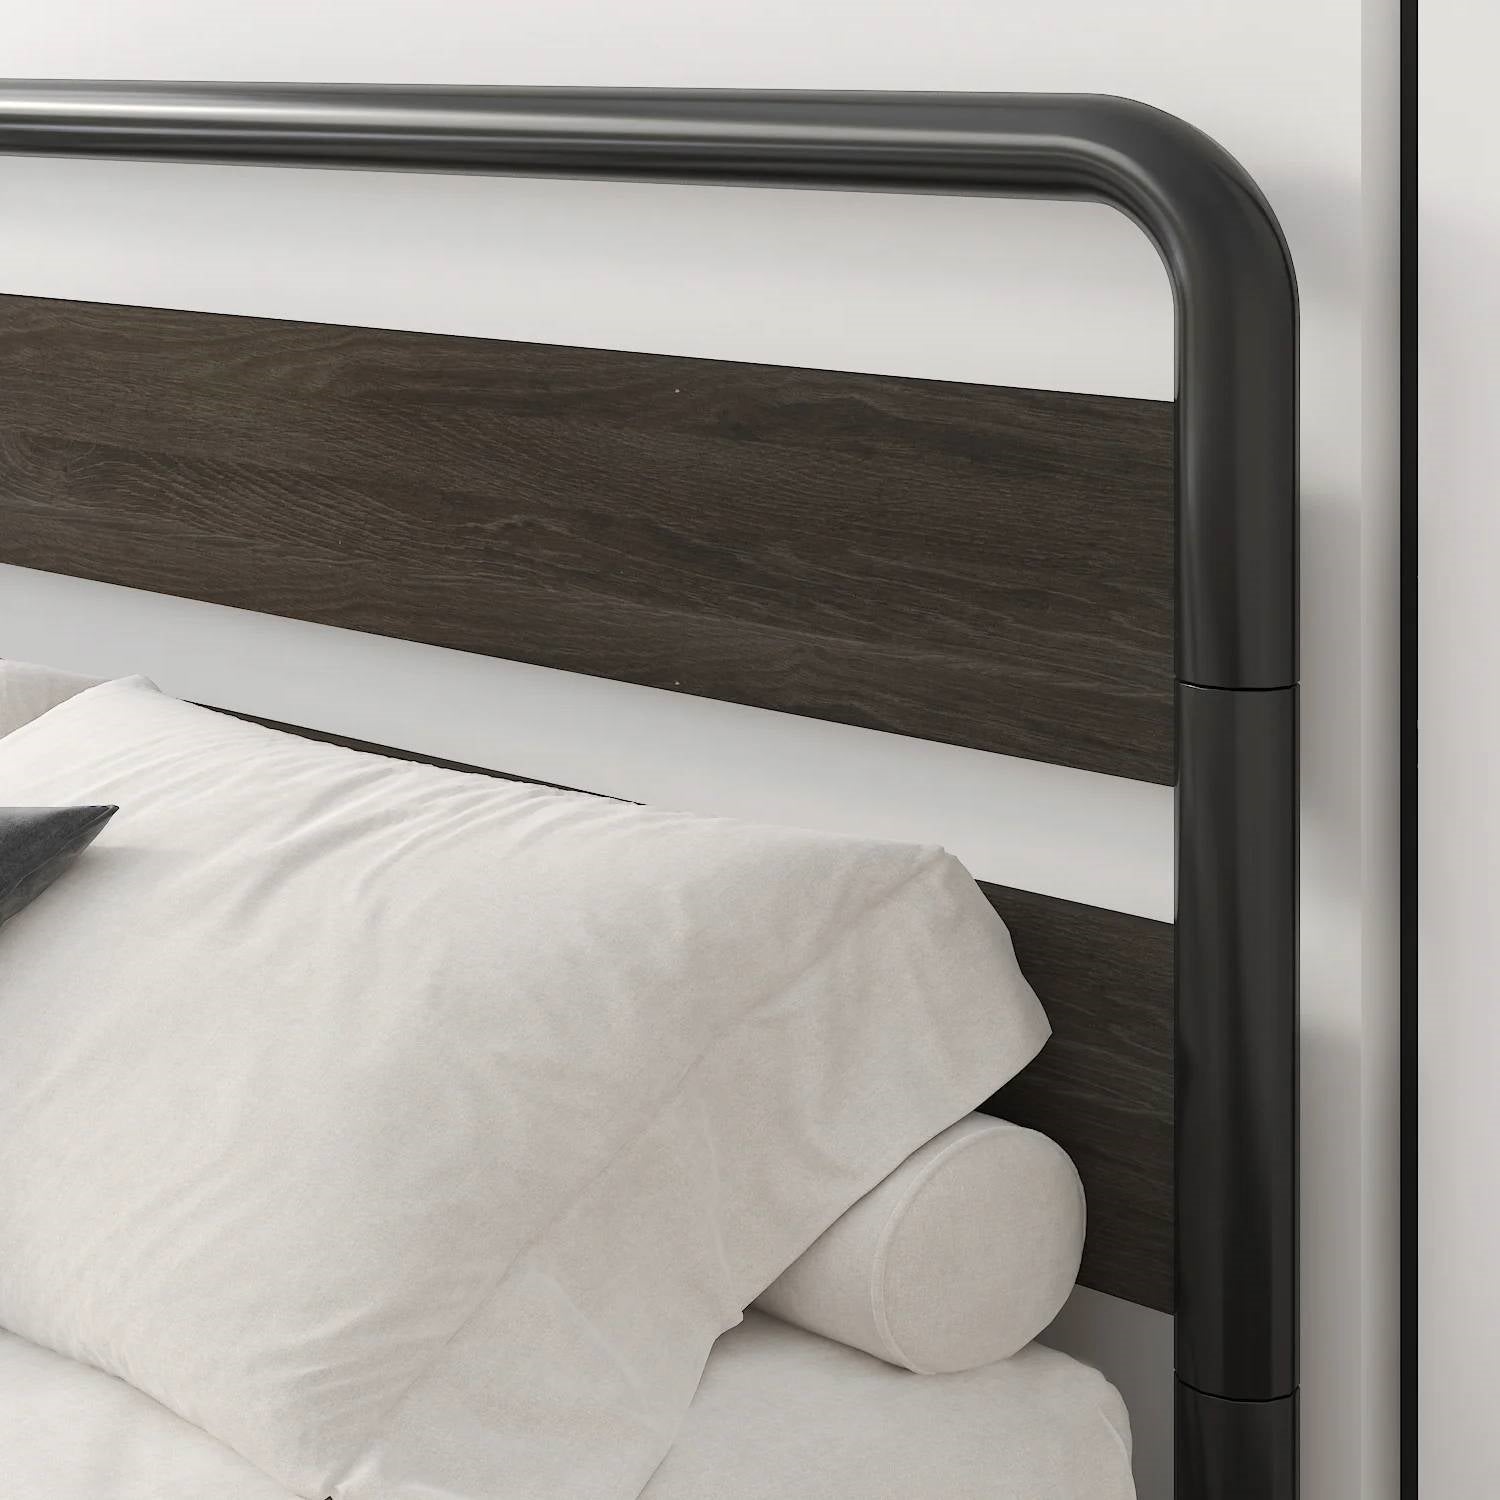 Bedroom > Bed Frames > Platform Beds - King Heavy Duty Round Metal Frame Platform Bed With Black Wood Panel Headboard